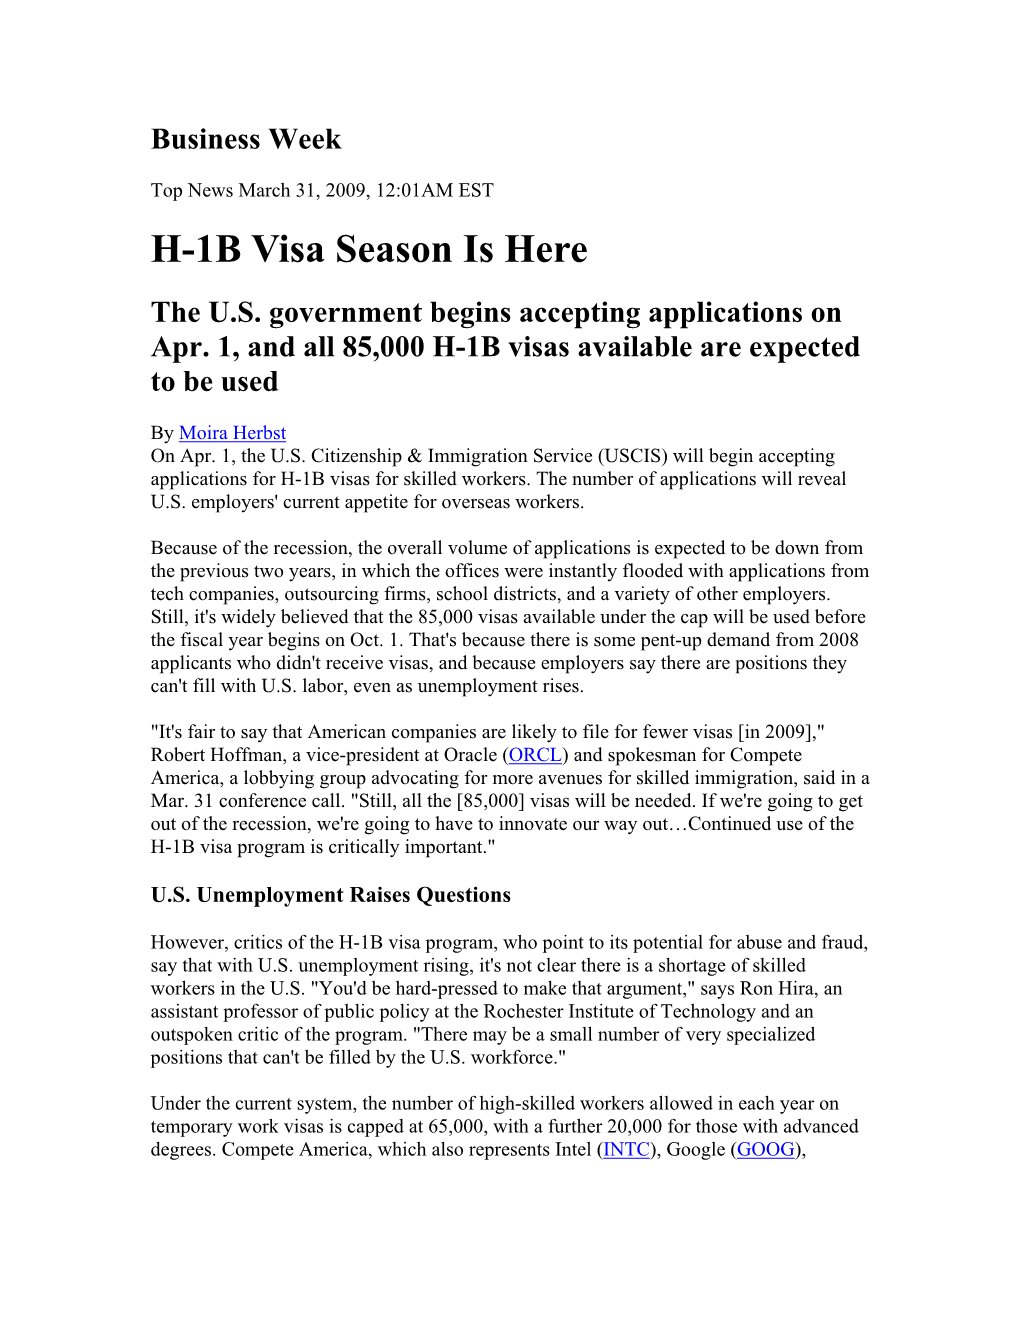 H-1B Visa Season Is Here the U.S